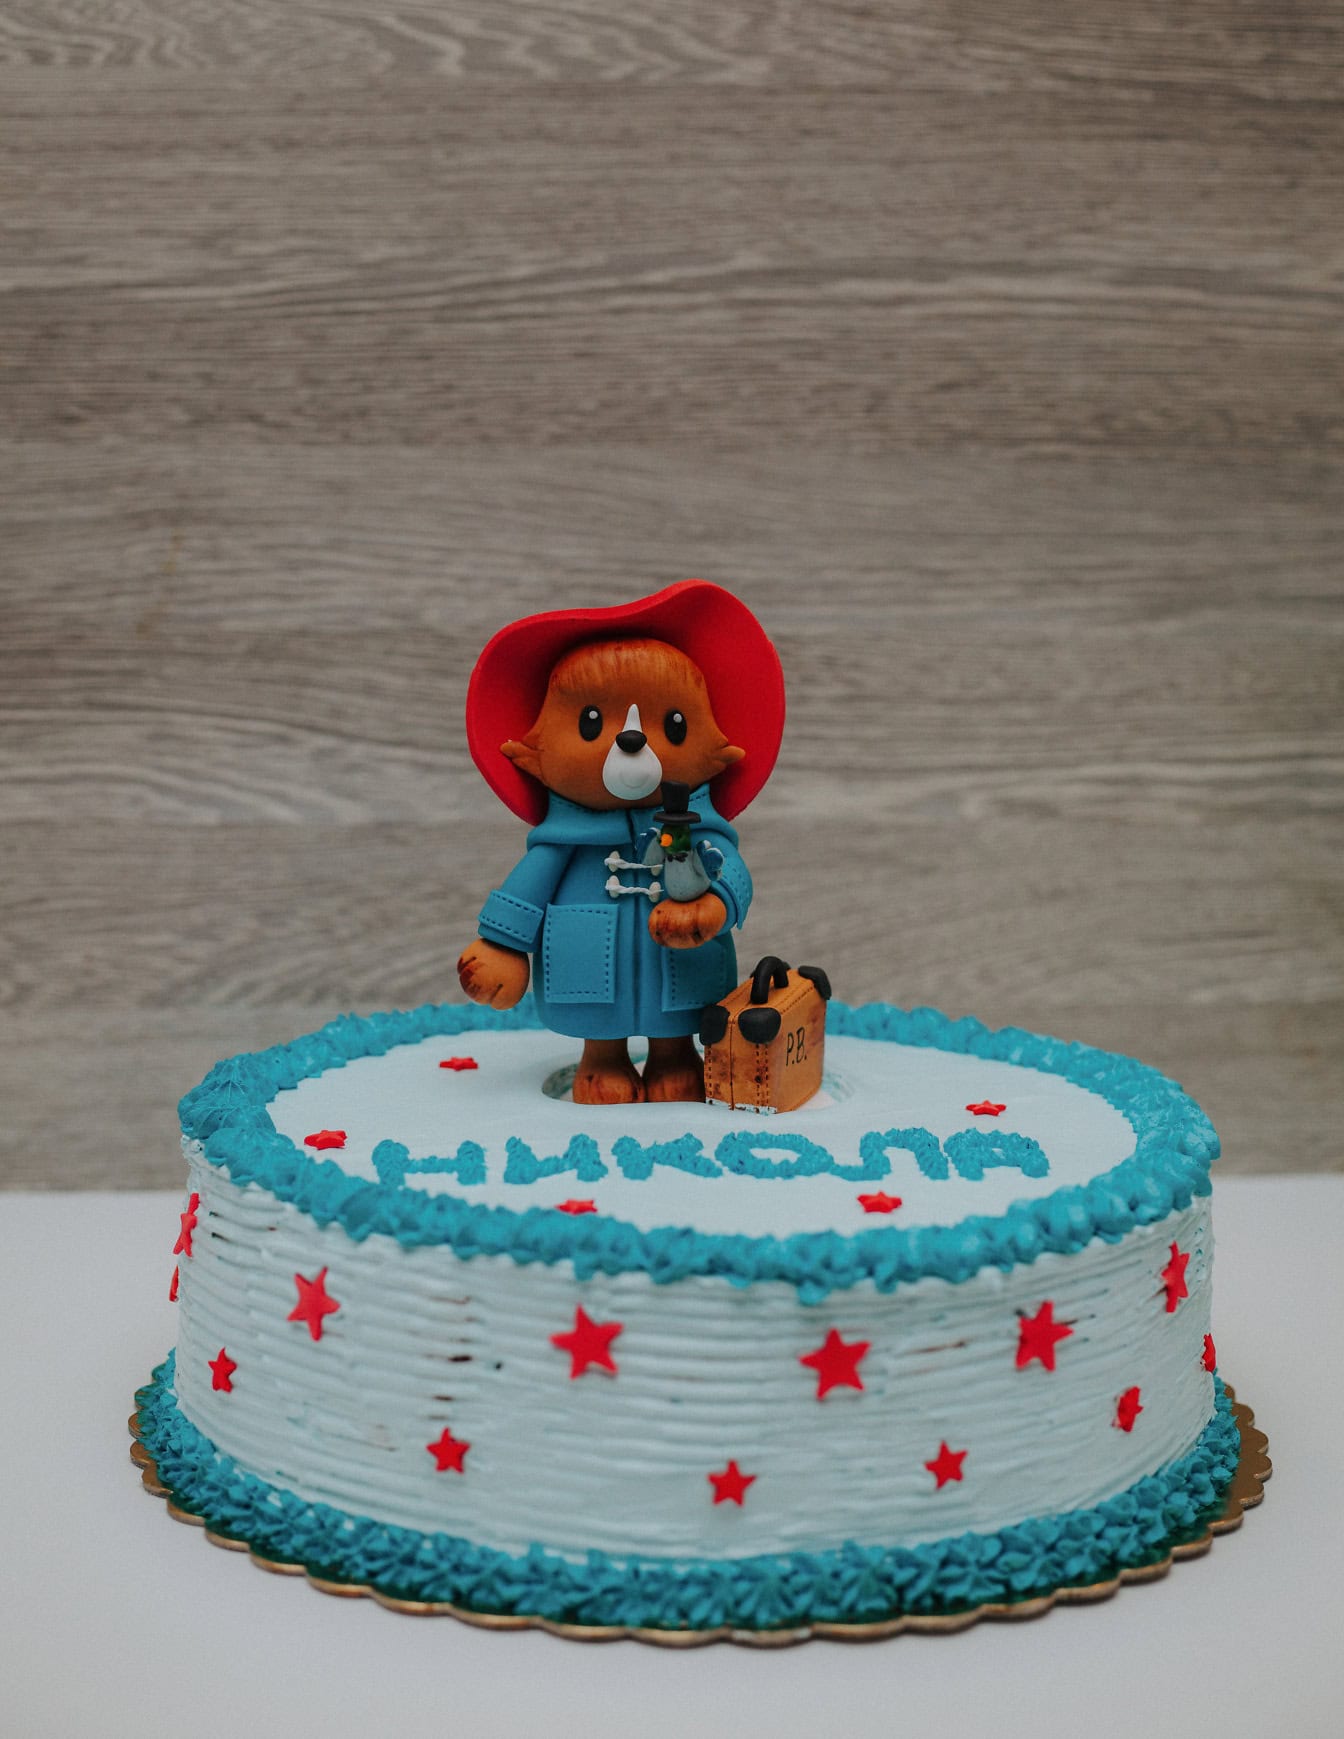 위에 패딩턴 테디베어 모양의 장식이 있는 생일 케이크